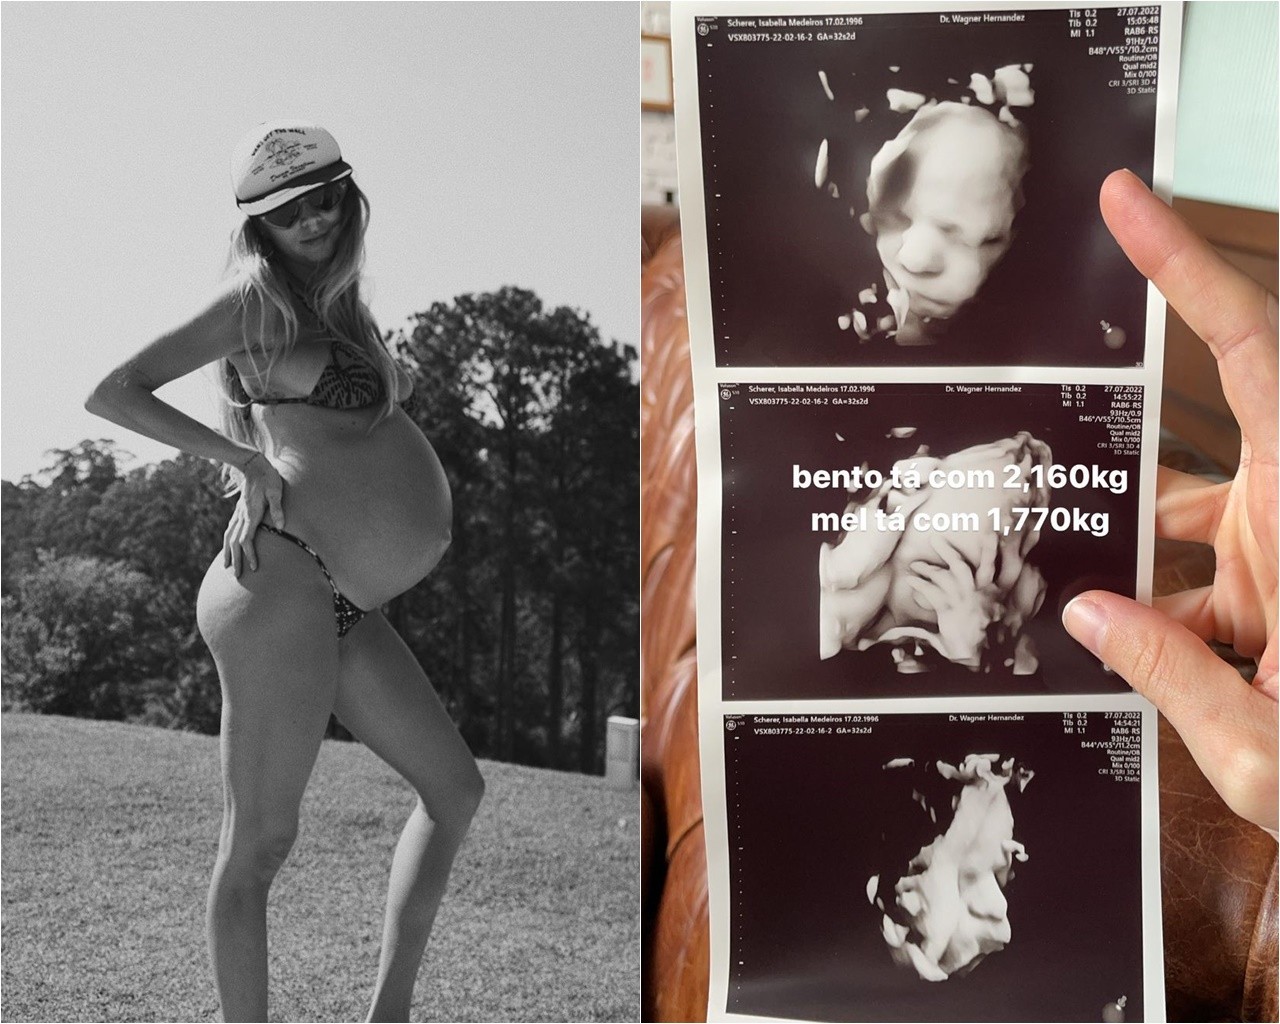 Isa Scherer compartilhou ultrassom dos filhos (Foto: Reprodução/Instagram)